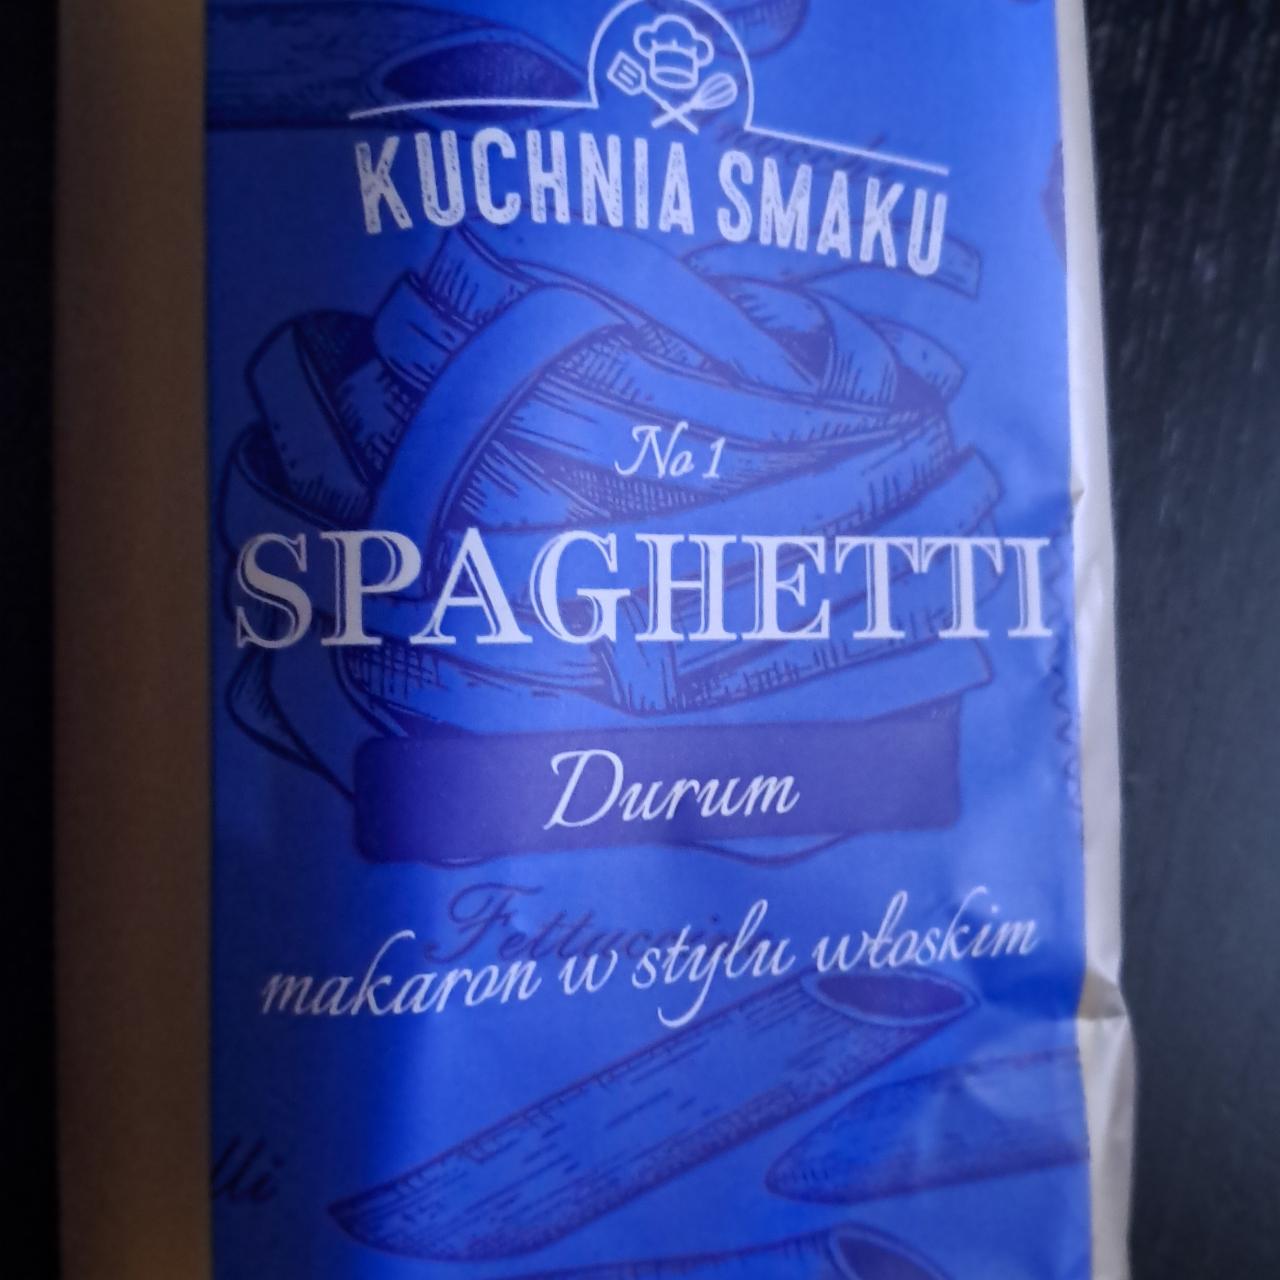 Zdjęcia - Spaghetti durum Kuchnia Smaku